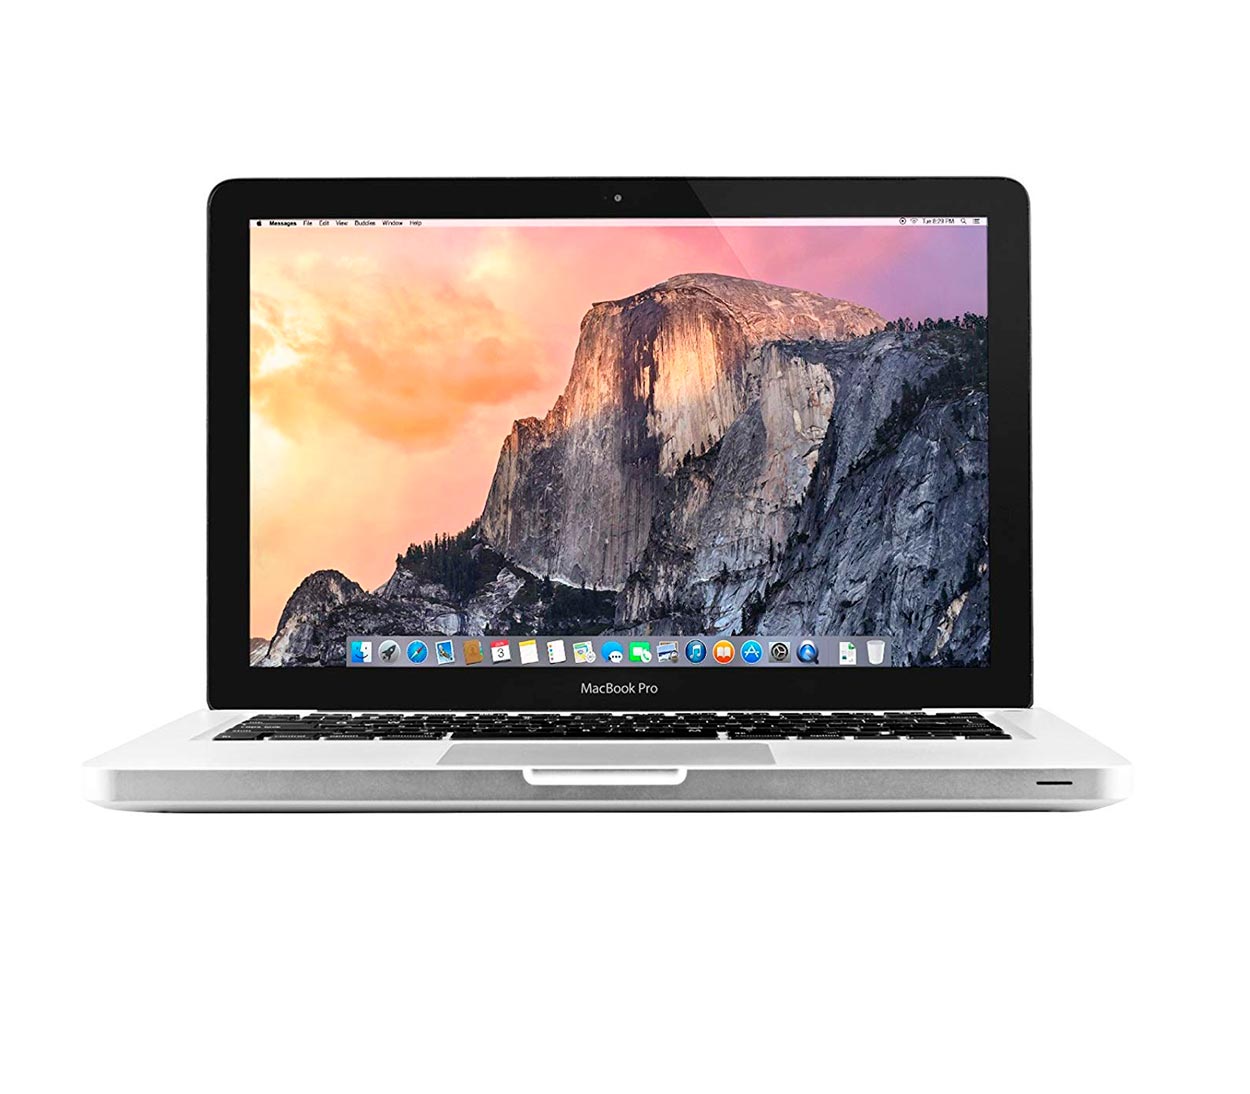 لپ تاپ استوک اپل مک بوک پرو مدل Apple MacBook Pro Late 2011 - 15 inch